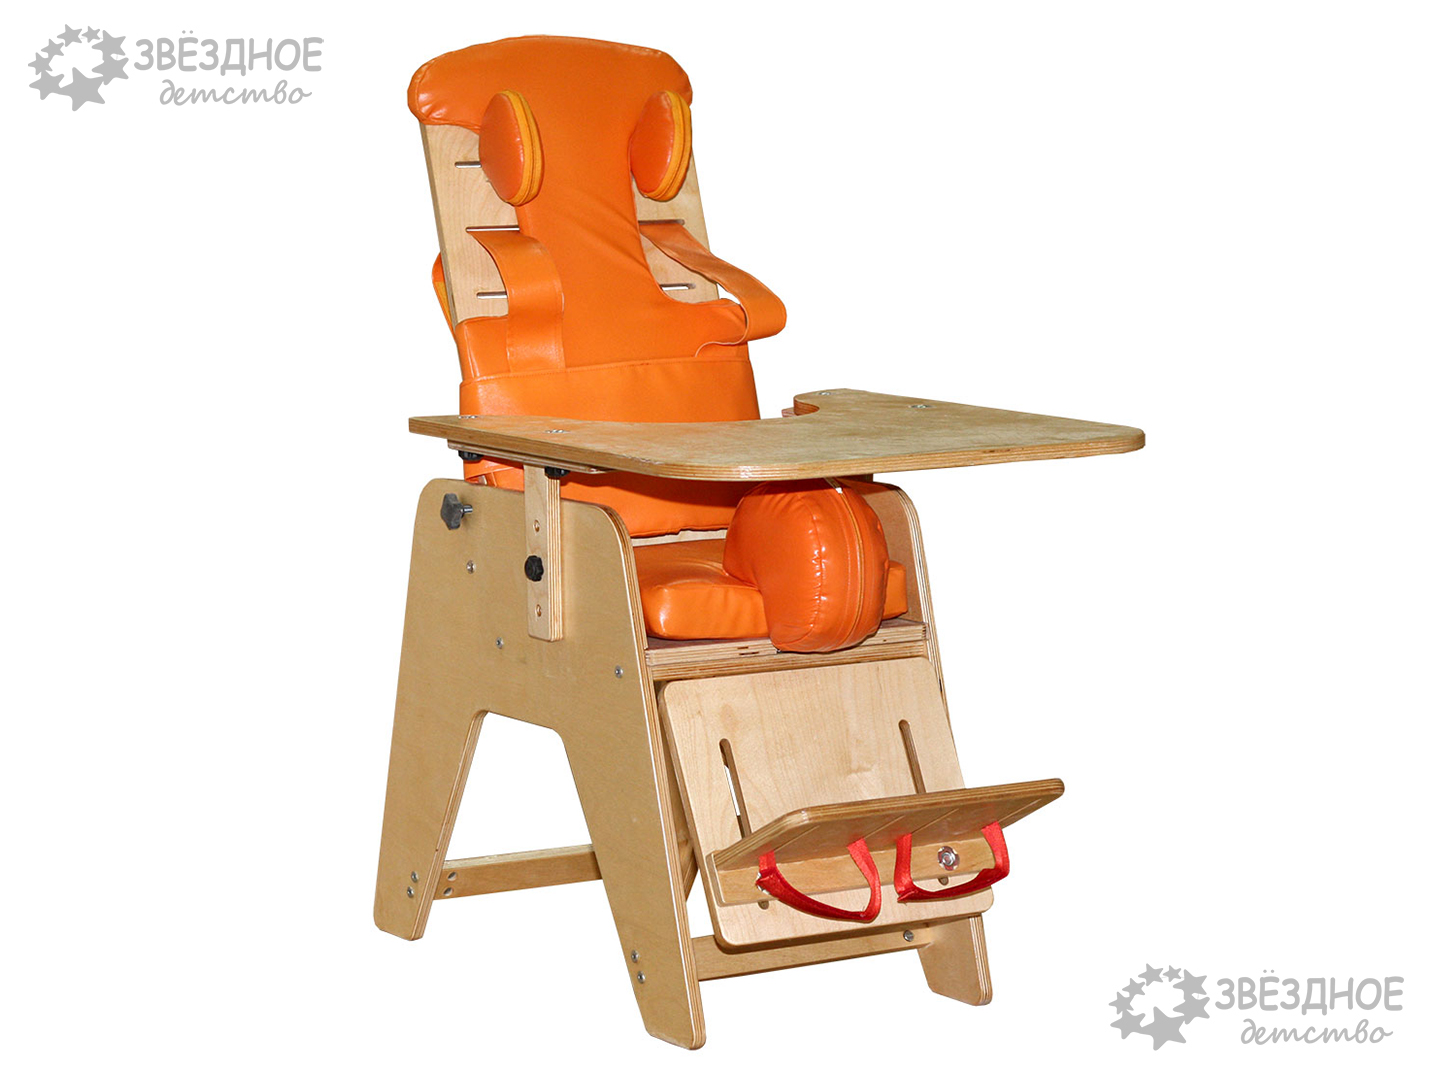 Функциональное кресло для детей с ов (i ростовая группа)